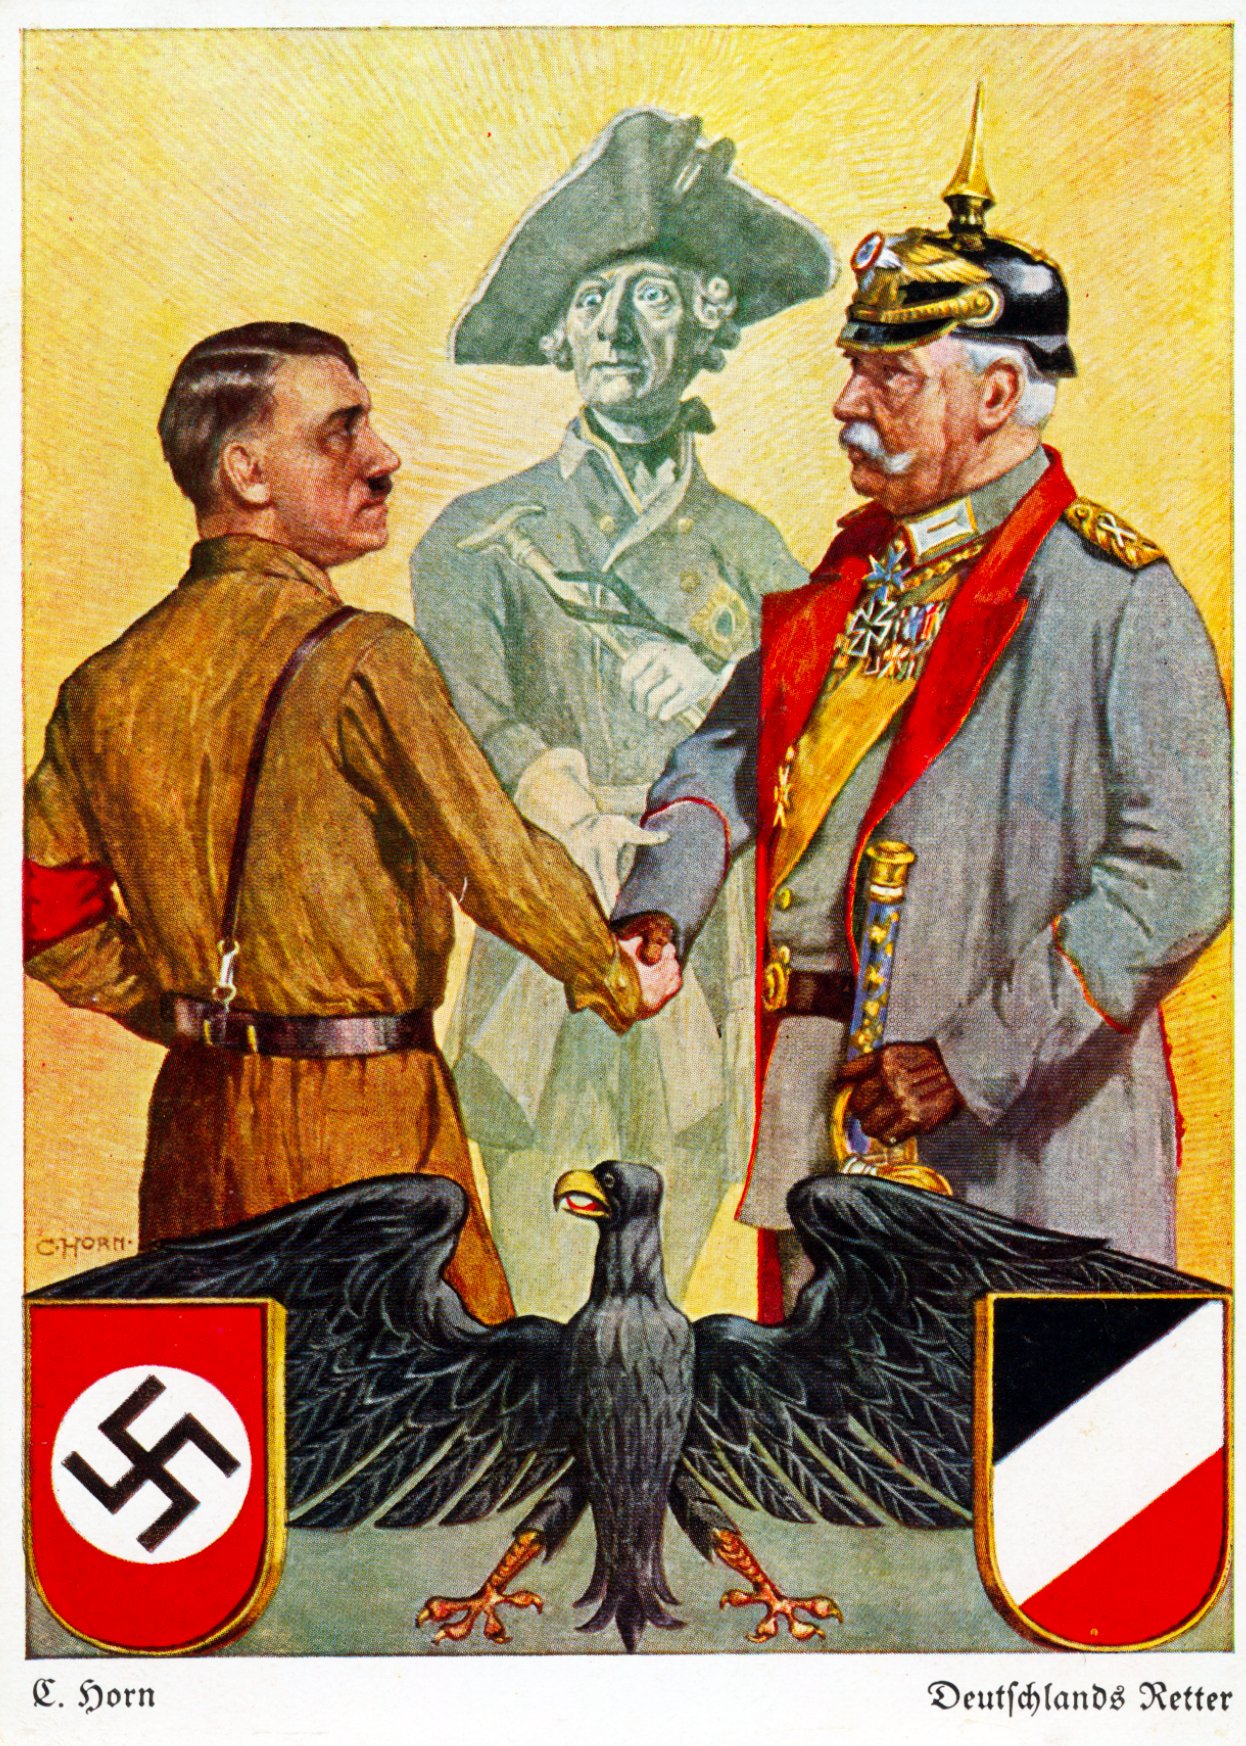 Propagandowa pocztówka z 1933 roku przedstawiająca Hitlera ściskającego dłoń Hindenburgowi, za nimi Fryderyk Wielki